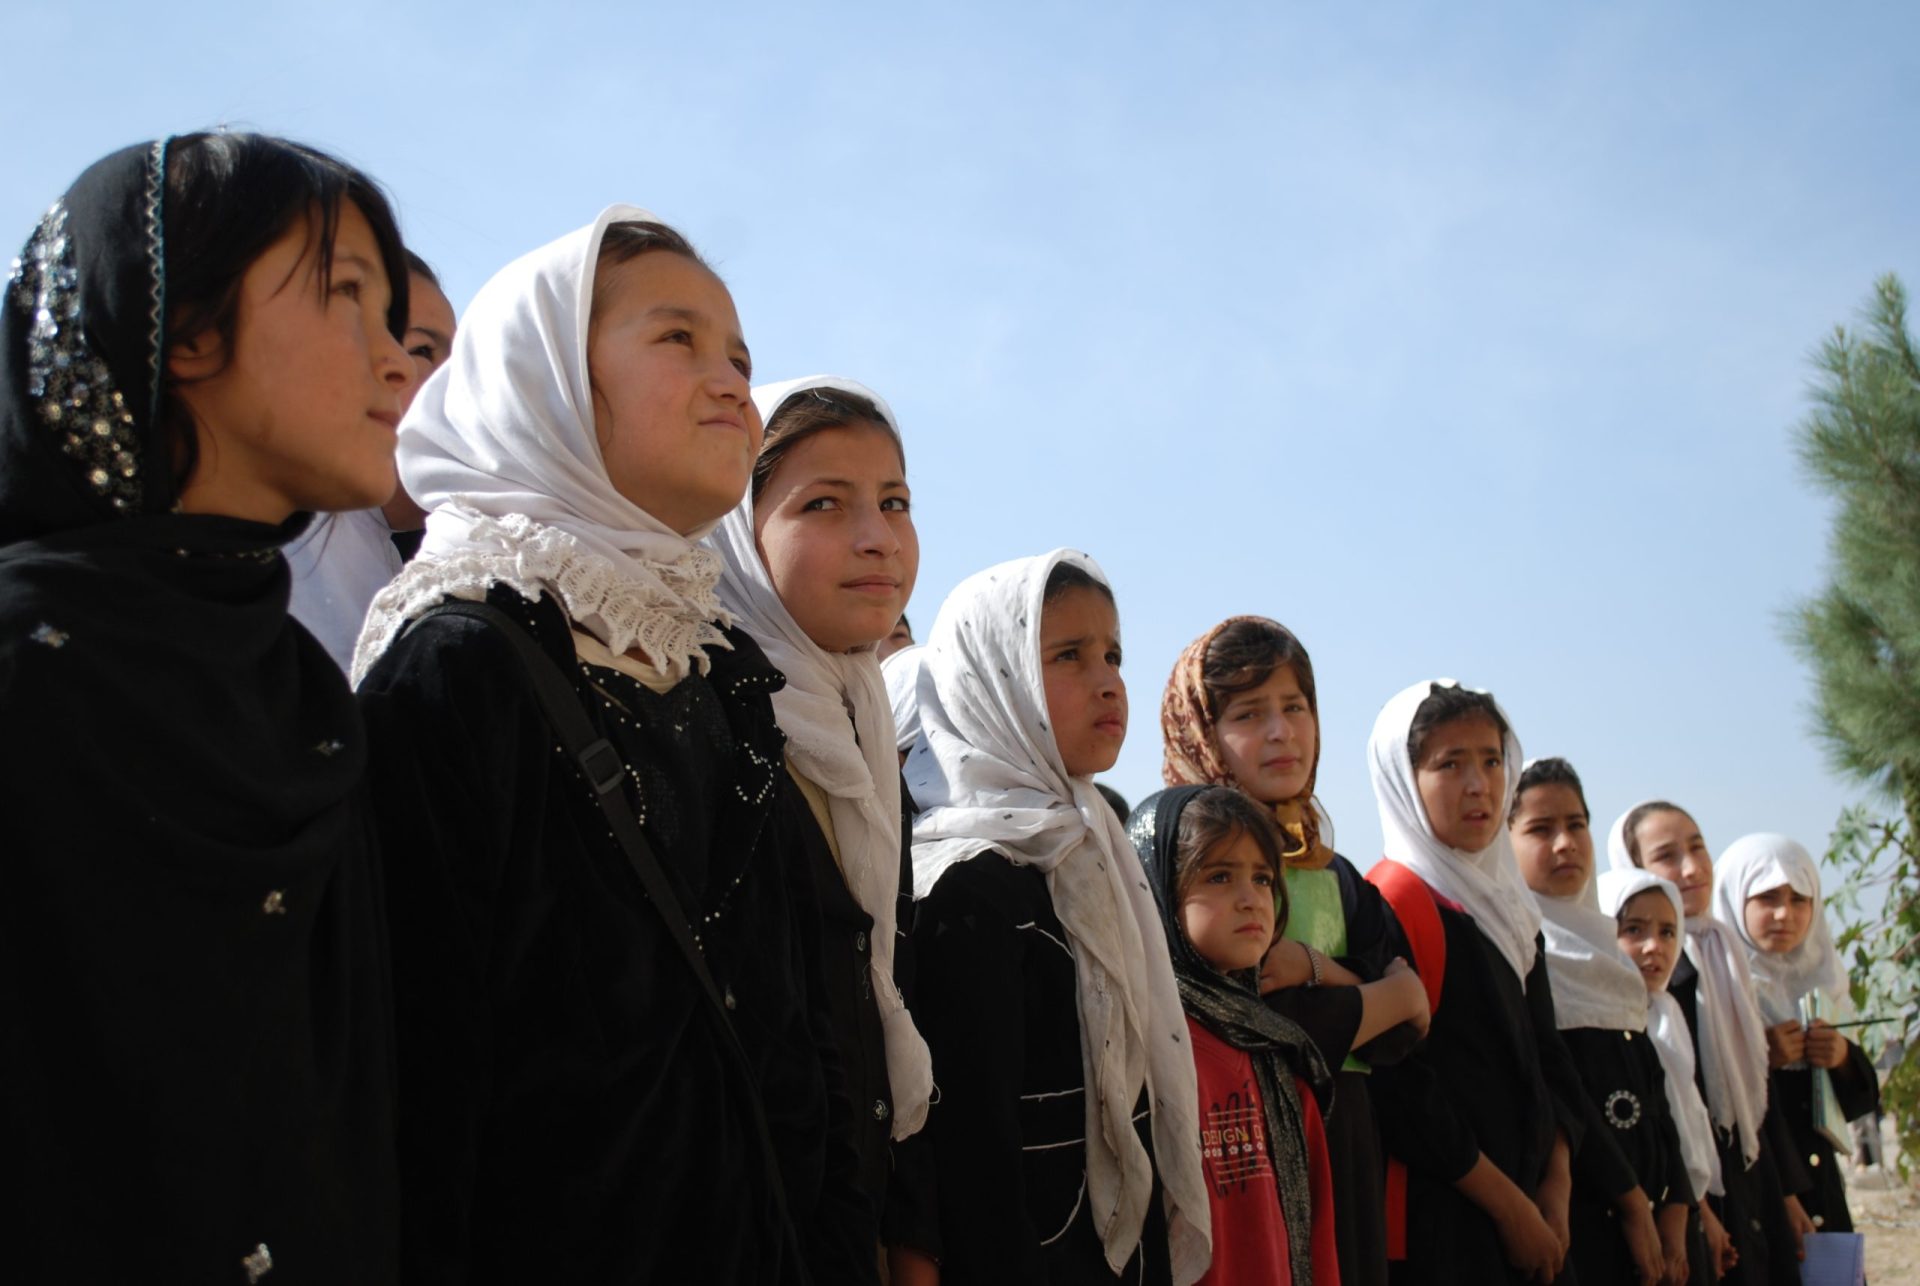 Afeganistão: rapariga finge ser rapaz para poder ir à escola